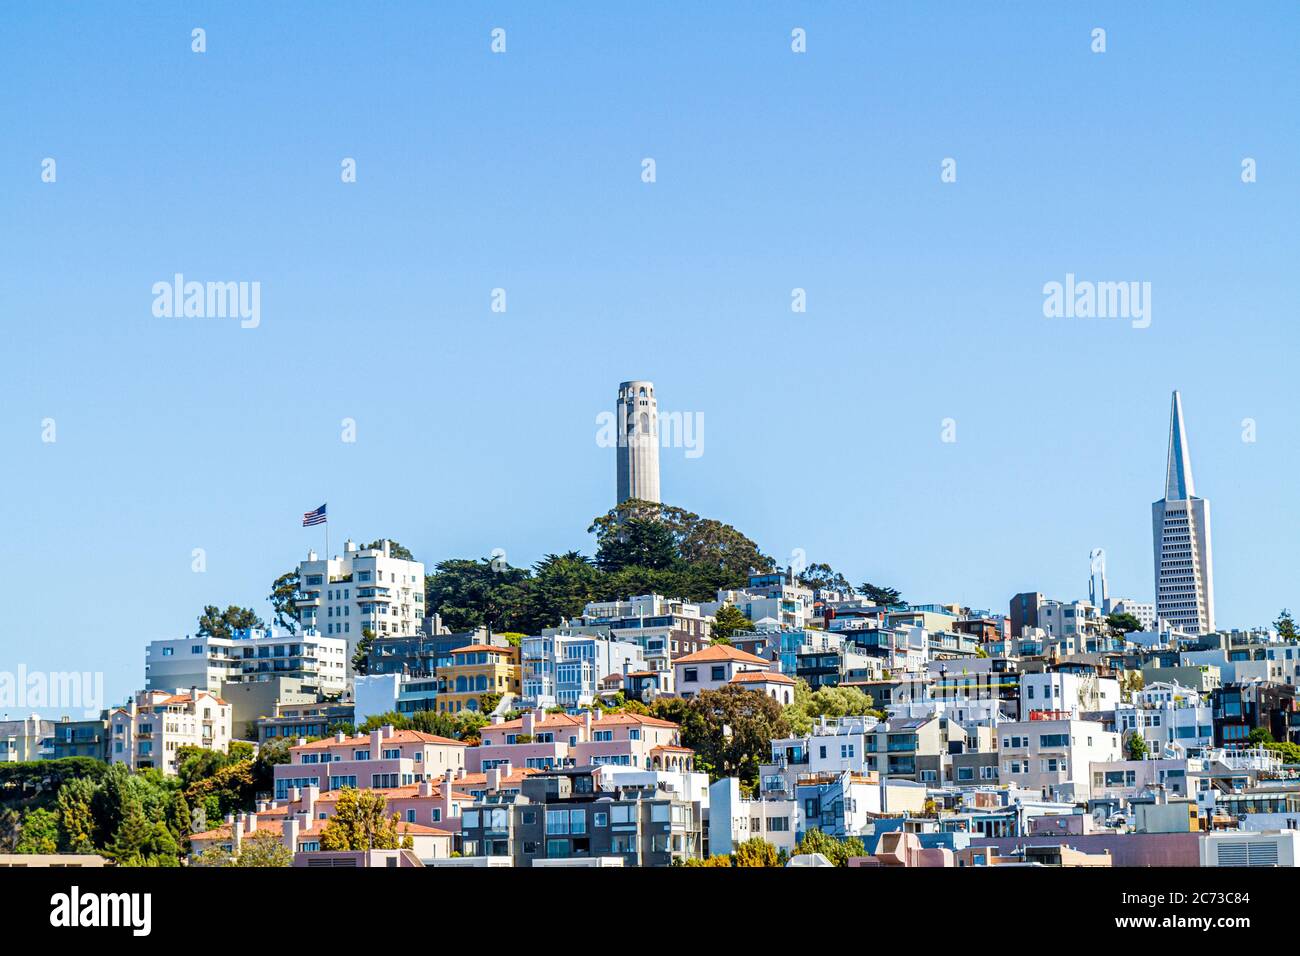 San Francisco California, barrio de Telegraph Hill, Coit Tower, skylineart deco, edificio, cielo azul claro, Arthur Brown, Henry Howard, Transamerica Pyramid Foto de stock